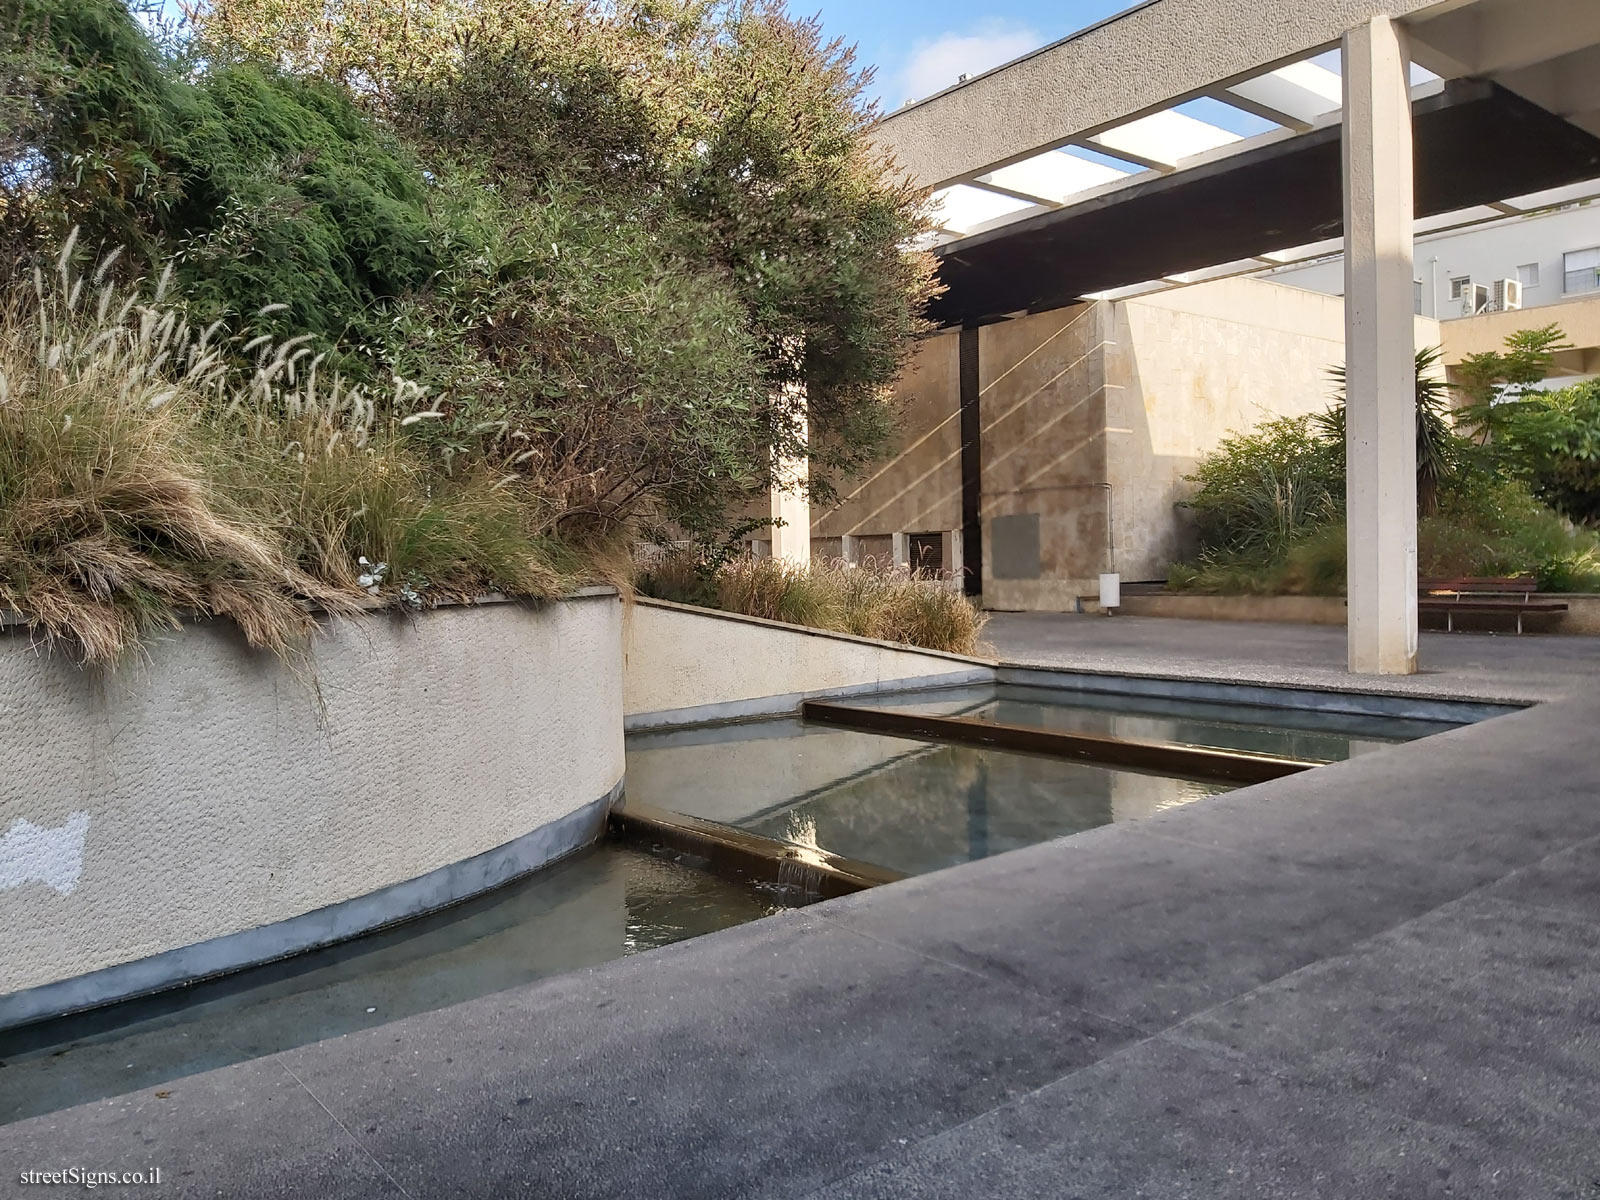 Tel Aviv - buildings for conservation - Ya’akov’s garden - 1963